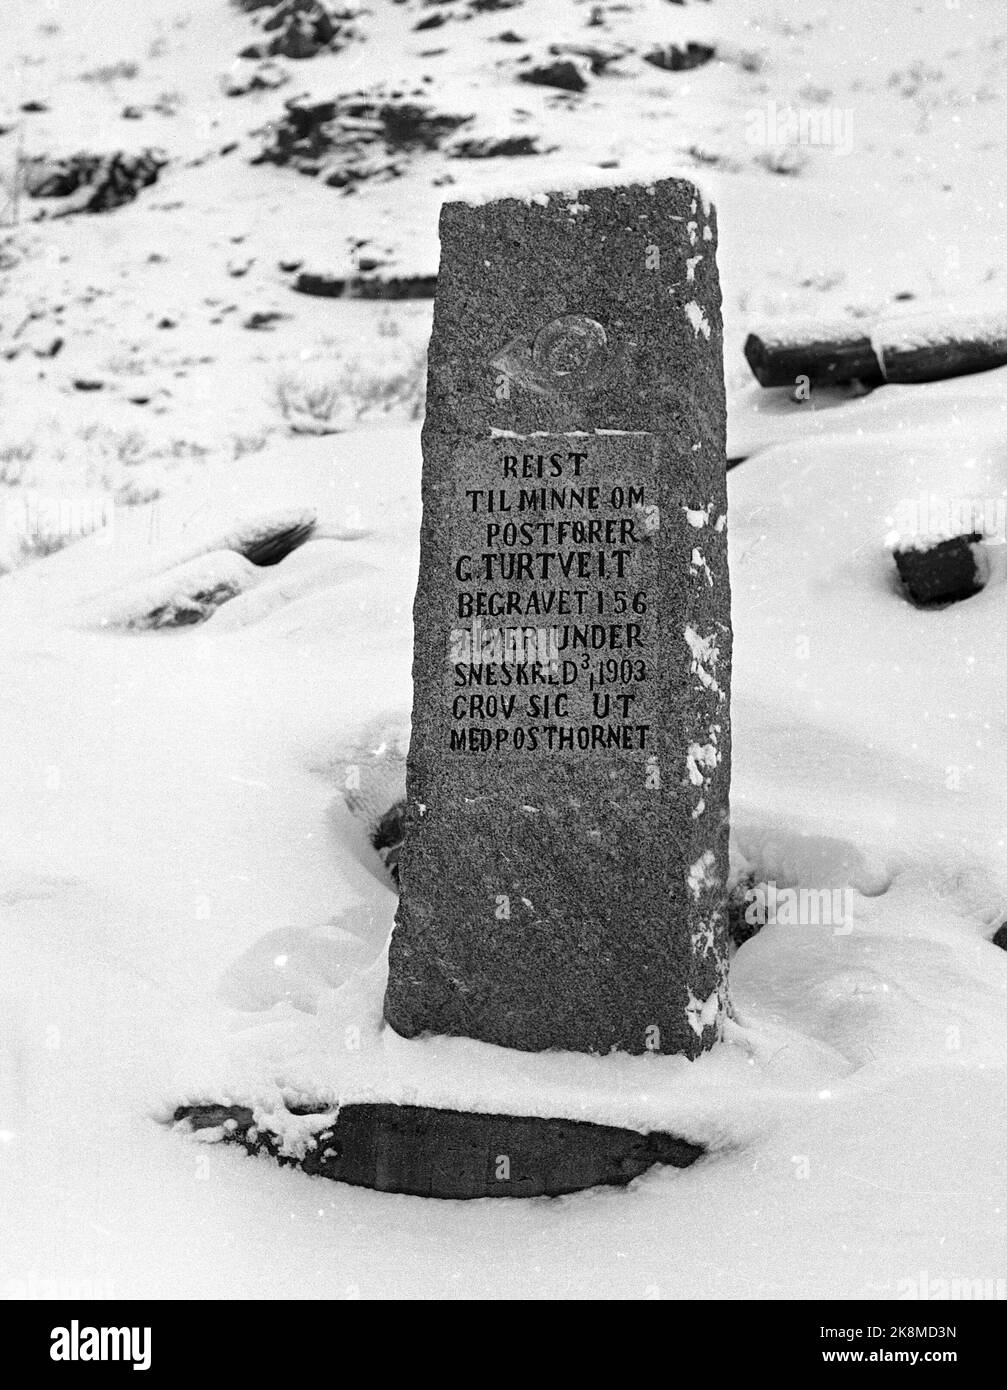 Røldal November 1967 die Ganzjahresstraße Røldal / Haukeli ist im Winter 1967-1968 zum ersten Mal geöffnet. In Seljestadjuvet stand dieser Bautstonen, der 1934 in Erinnerung an Postmeister Gunnar Turtveit errichtet wurde, der am 3. Januar 1903 hier vom Rennen genommen wurde, 54 Stunden unter Schnee, aber schließlich mit seinem Posthornet ausgegraben wurde. Foto: Kvaale / NTB / NTB Stockfoto